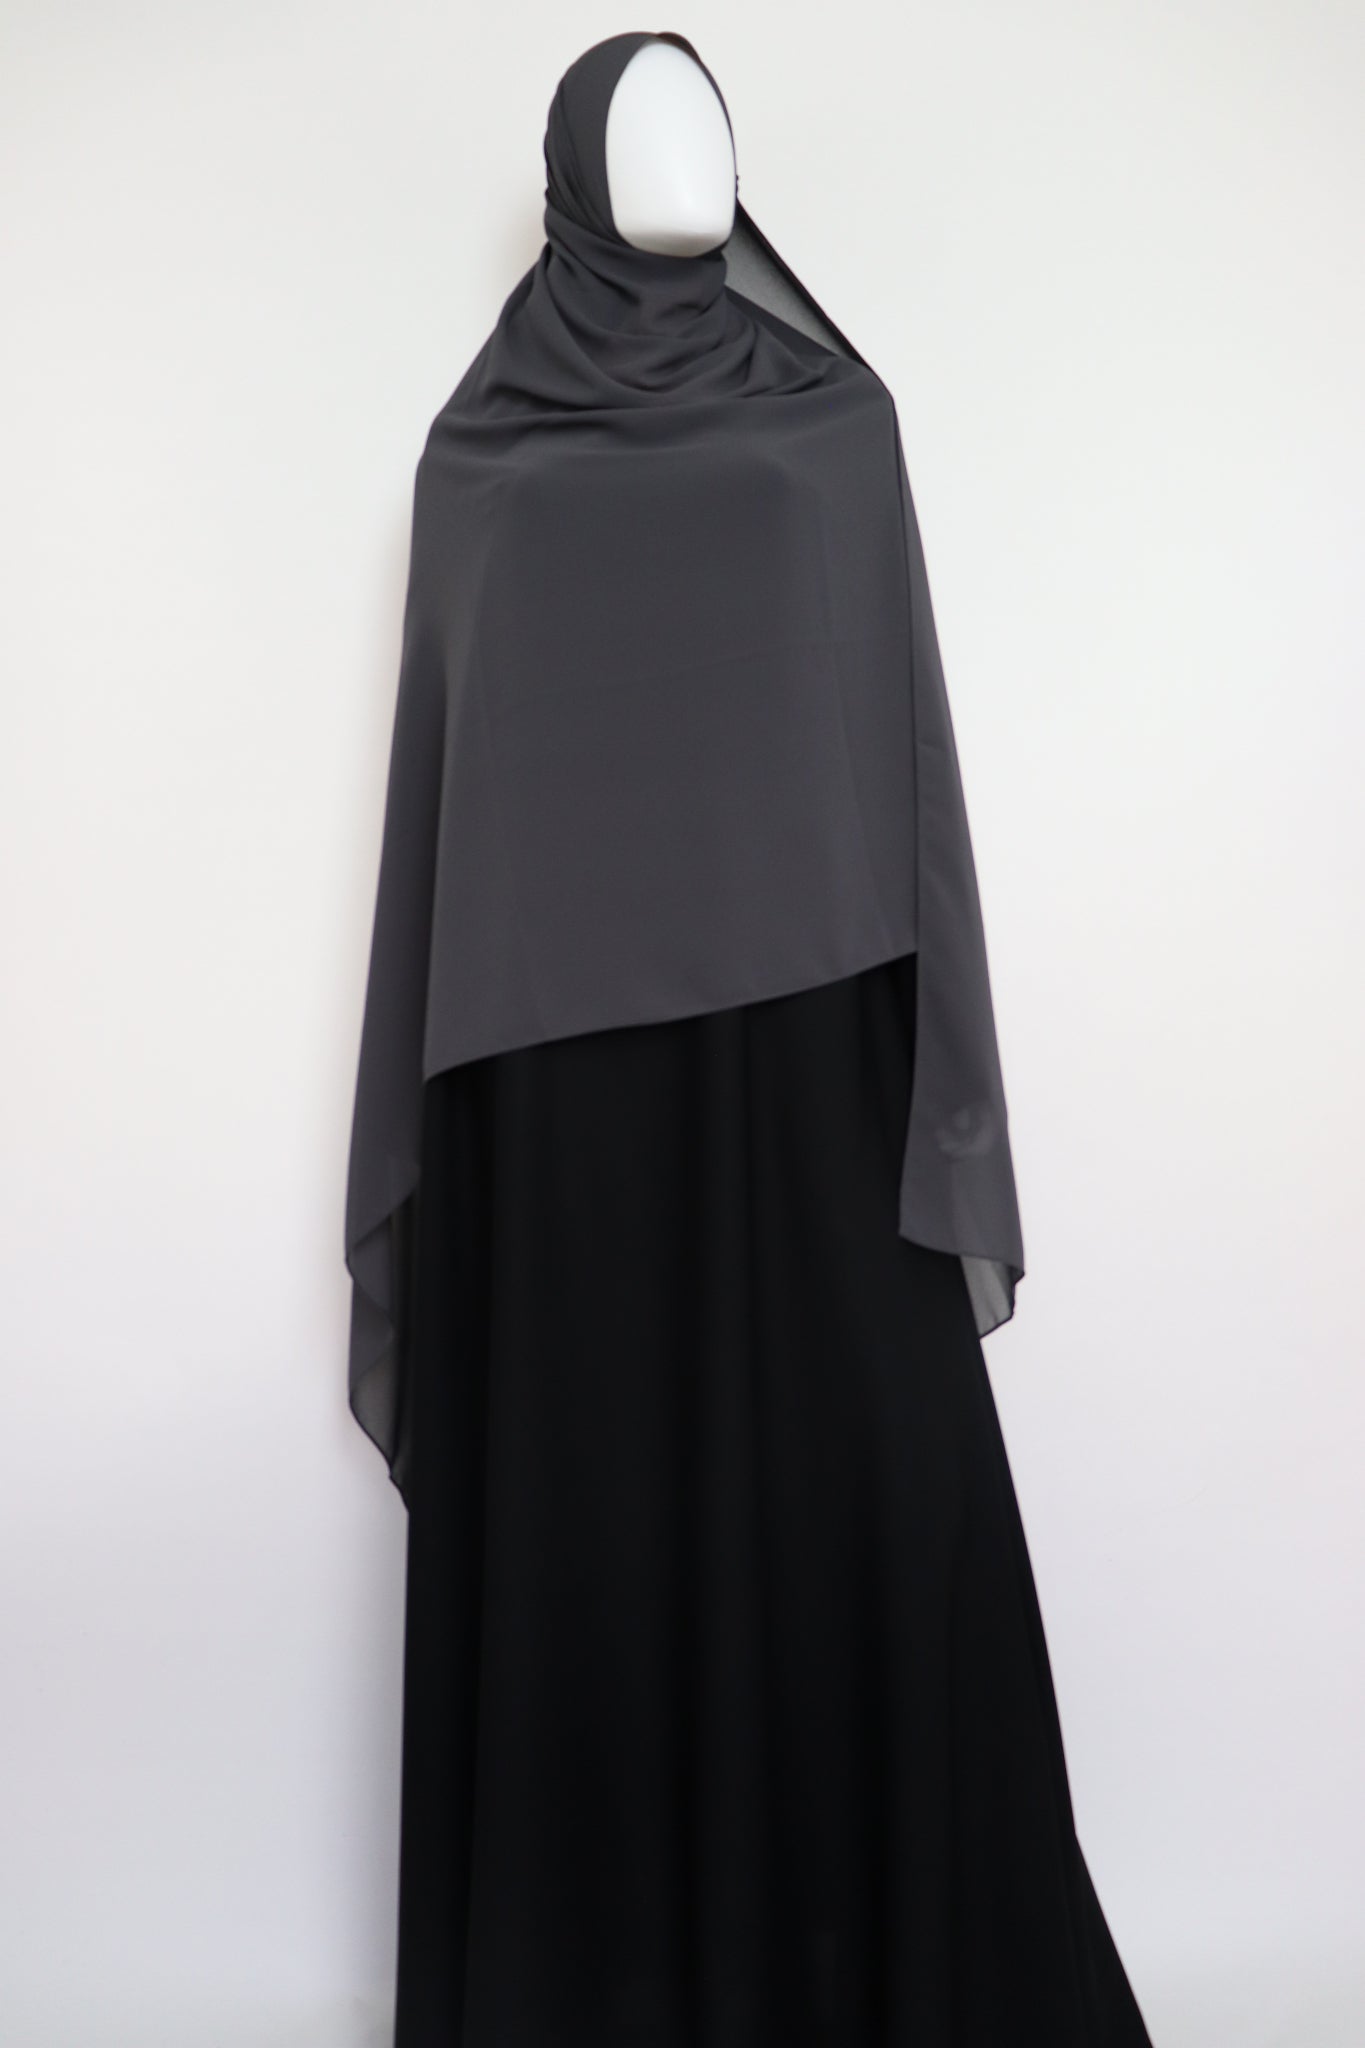 XL Premium Chiffon Hijab - Charcoal